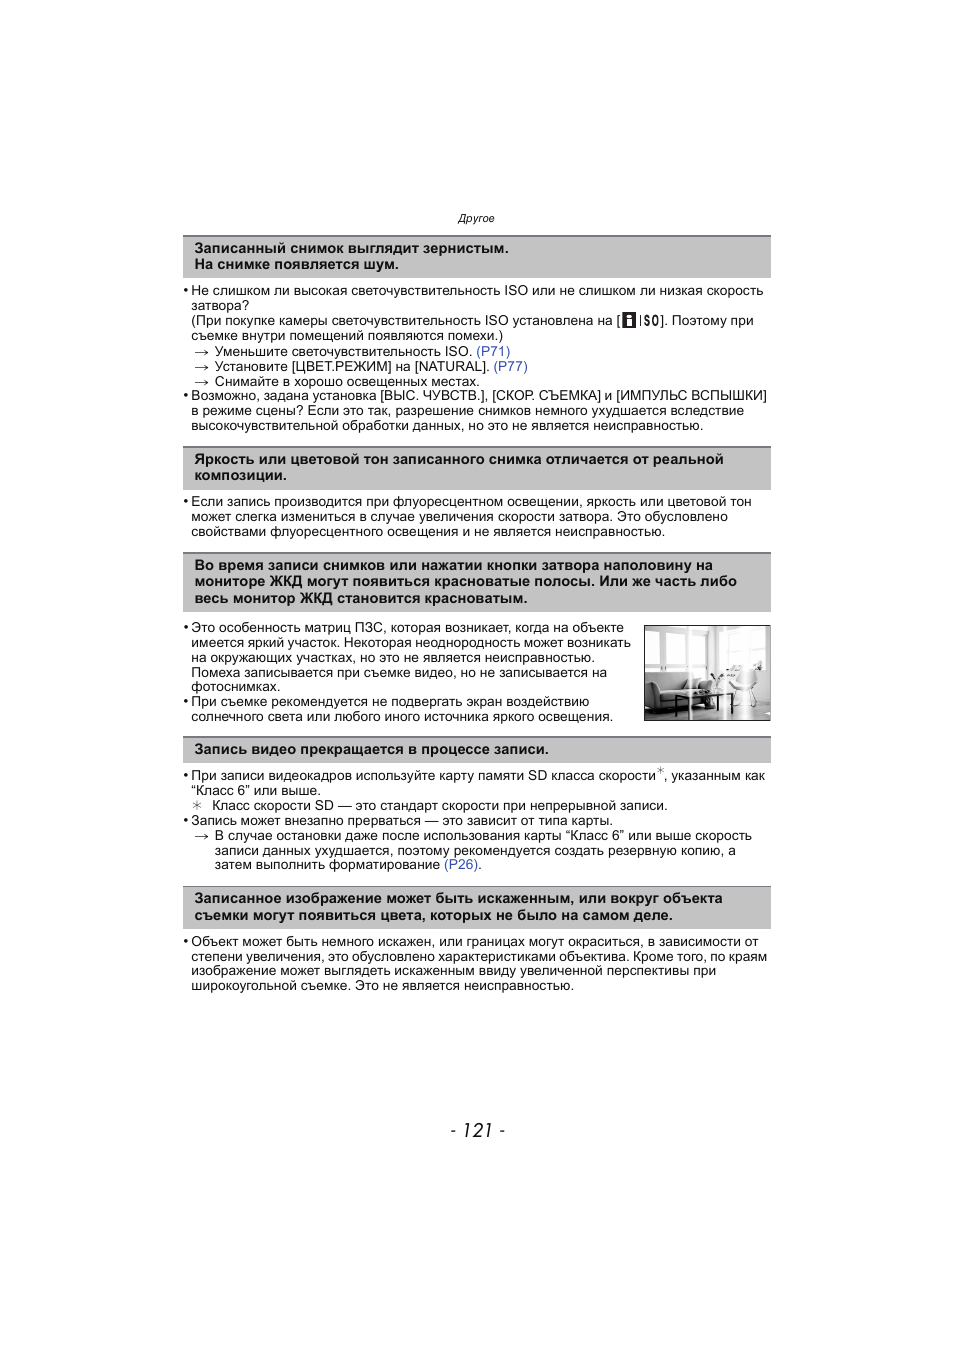 Инструкция по эксплуатации Panasonic KX-MC6020 | Страница 121 / 130